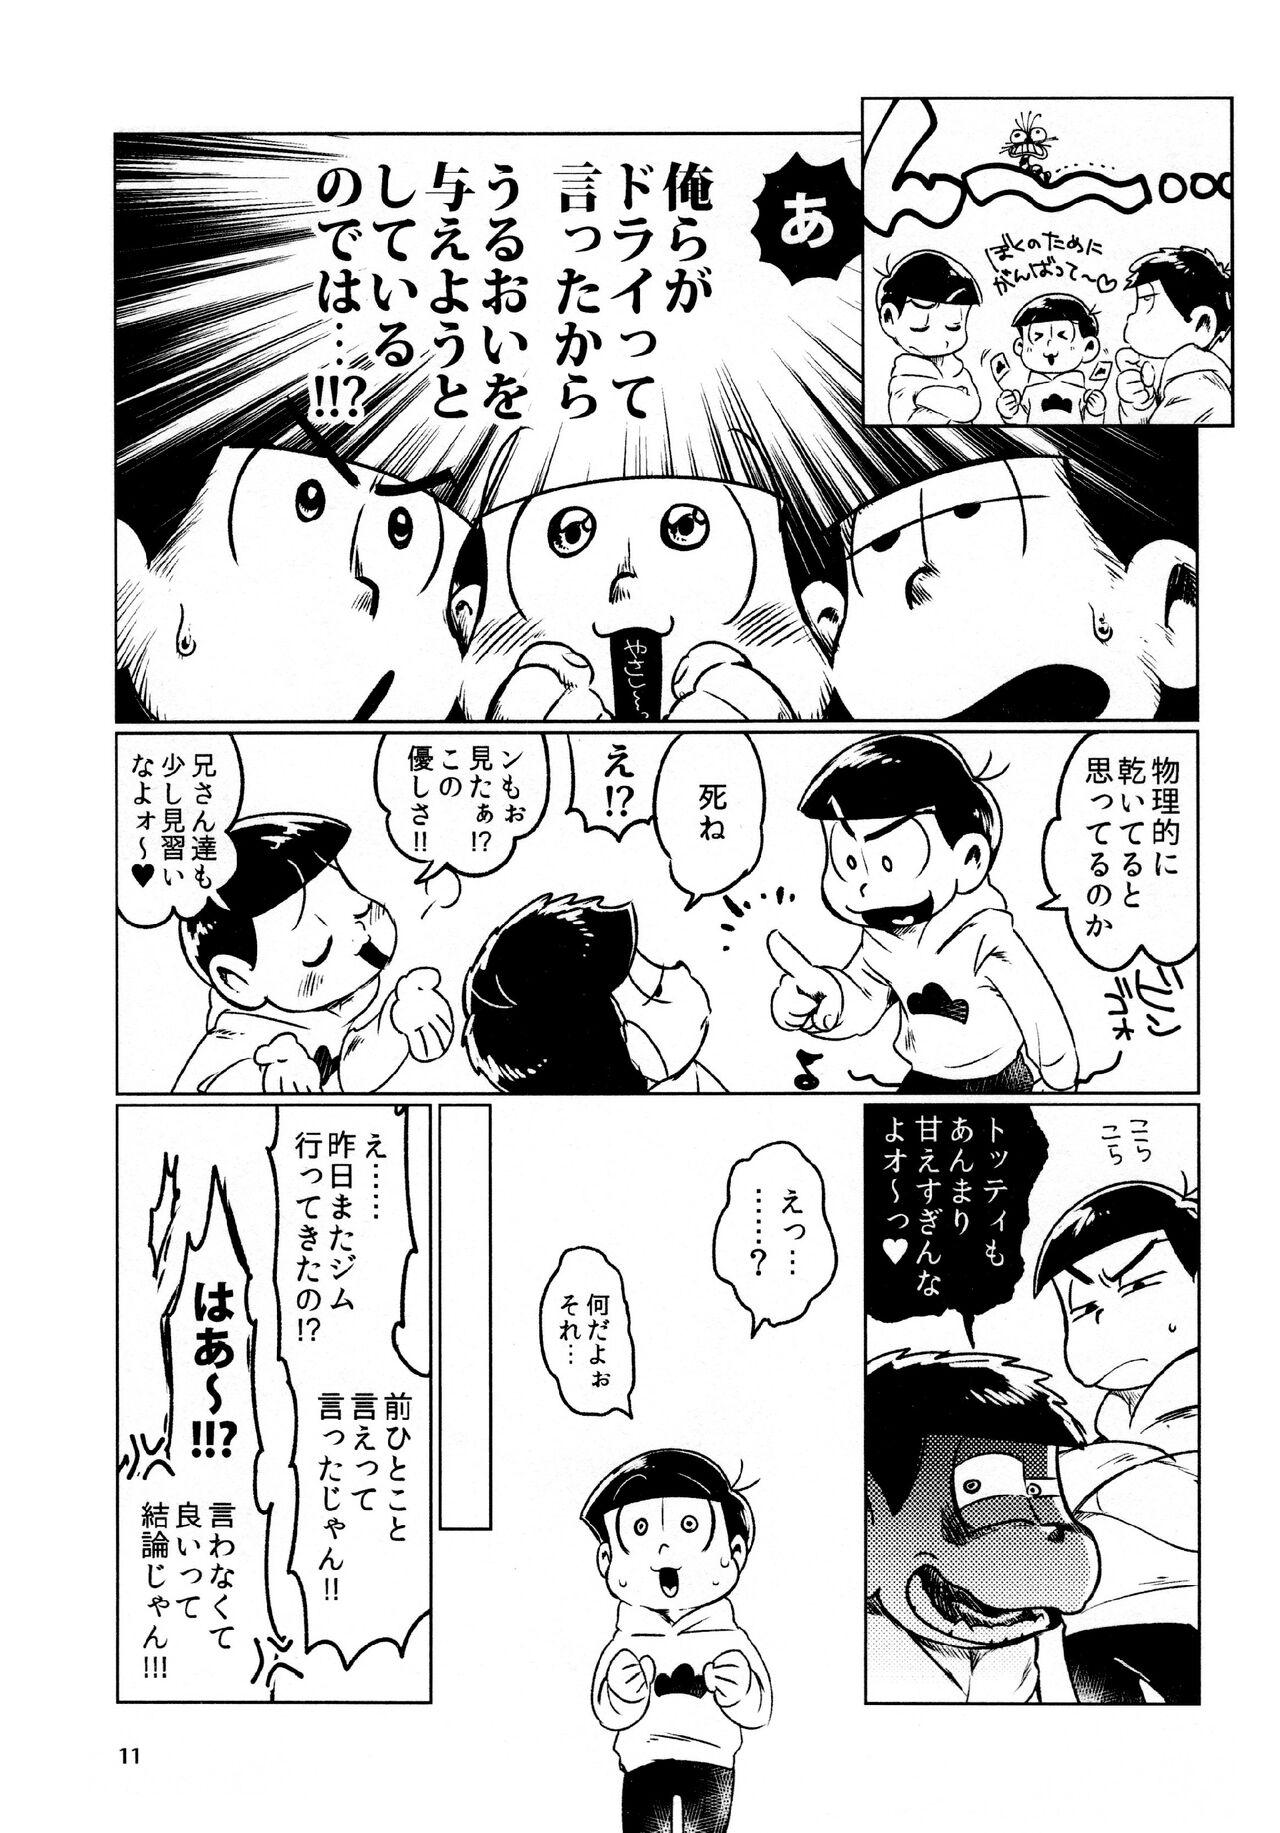 Piercing todomatsu bishi yonurekeikaku - Osomatsu-san Cojiendo - Page 11